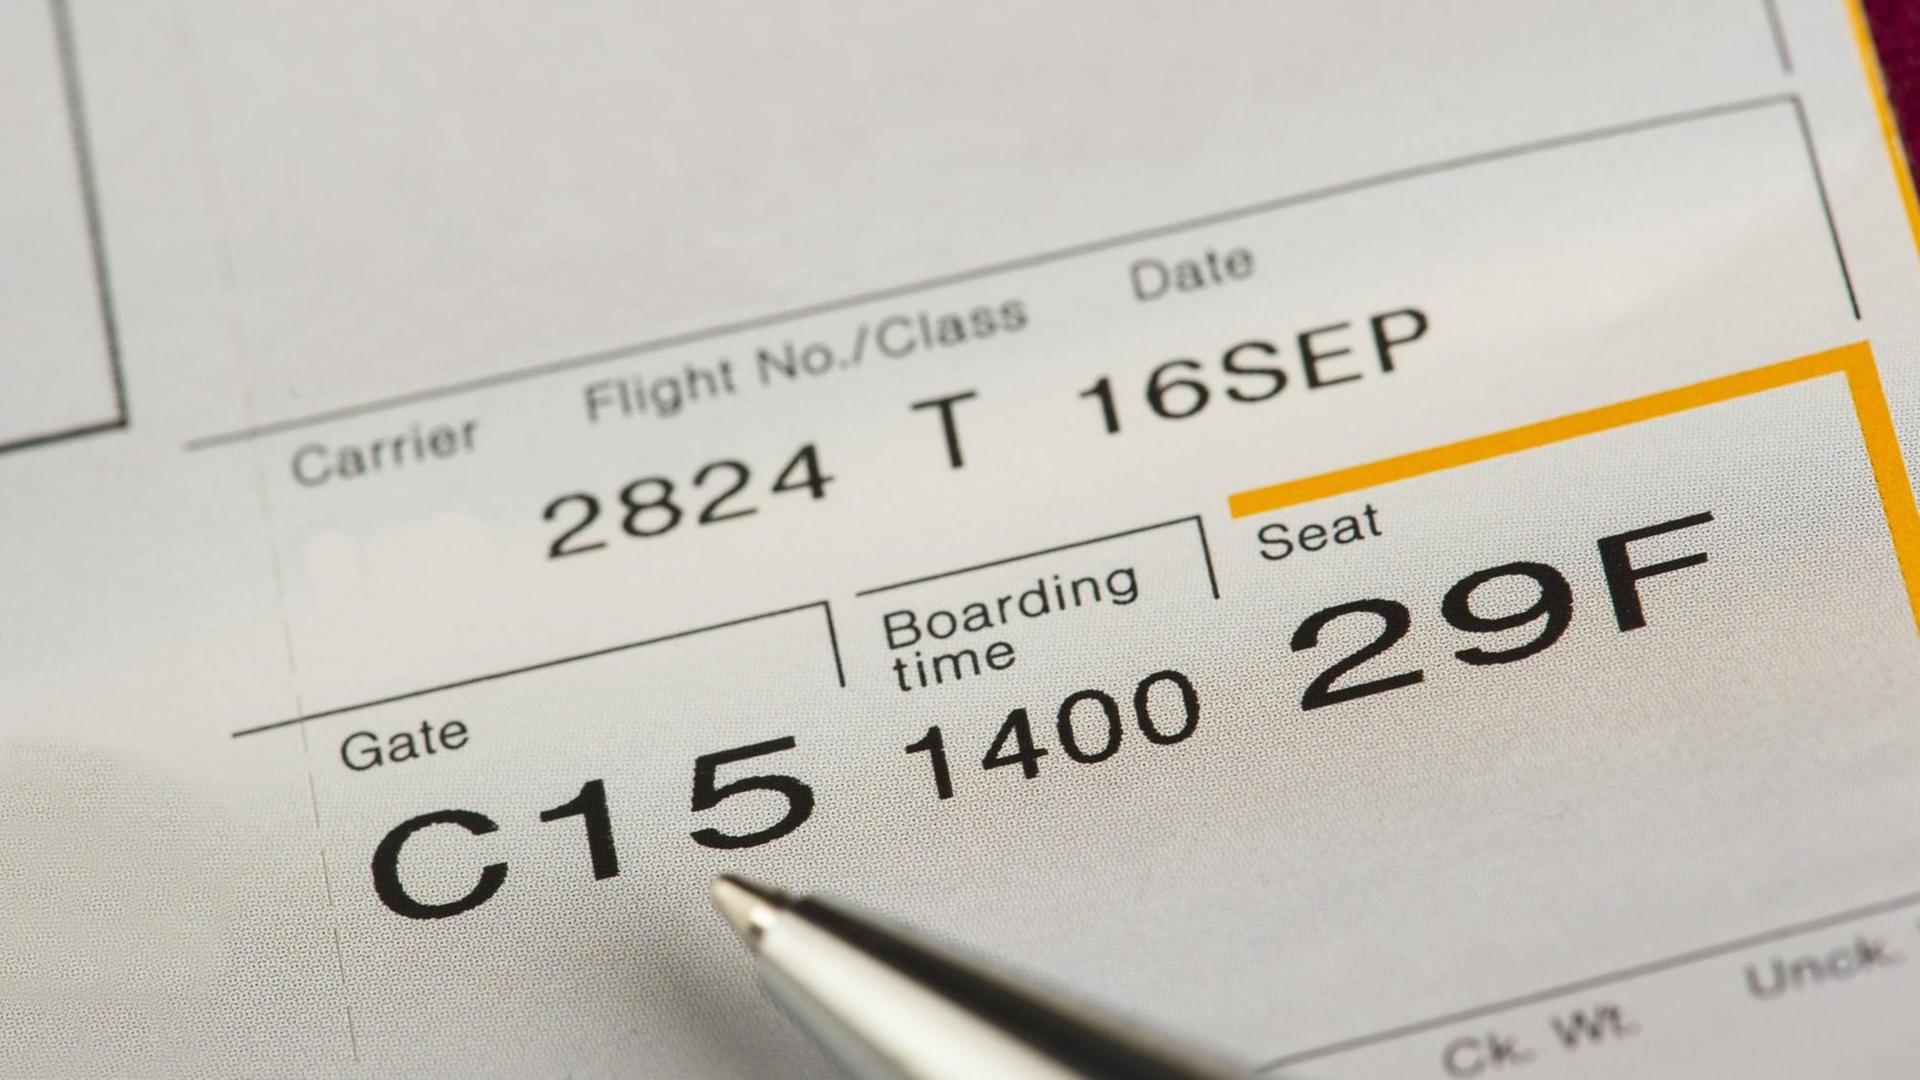 Ein Flugticket, auf dem das Datum, die Flugnummer, die Sitzplatznummer, die Boarding Time und die Gate-Nummer zu sehen sind.